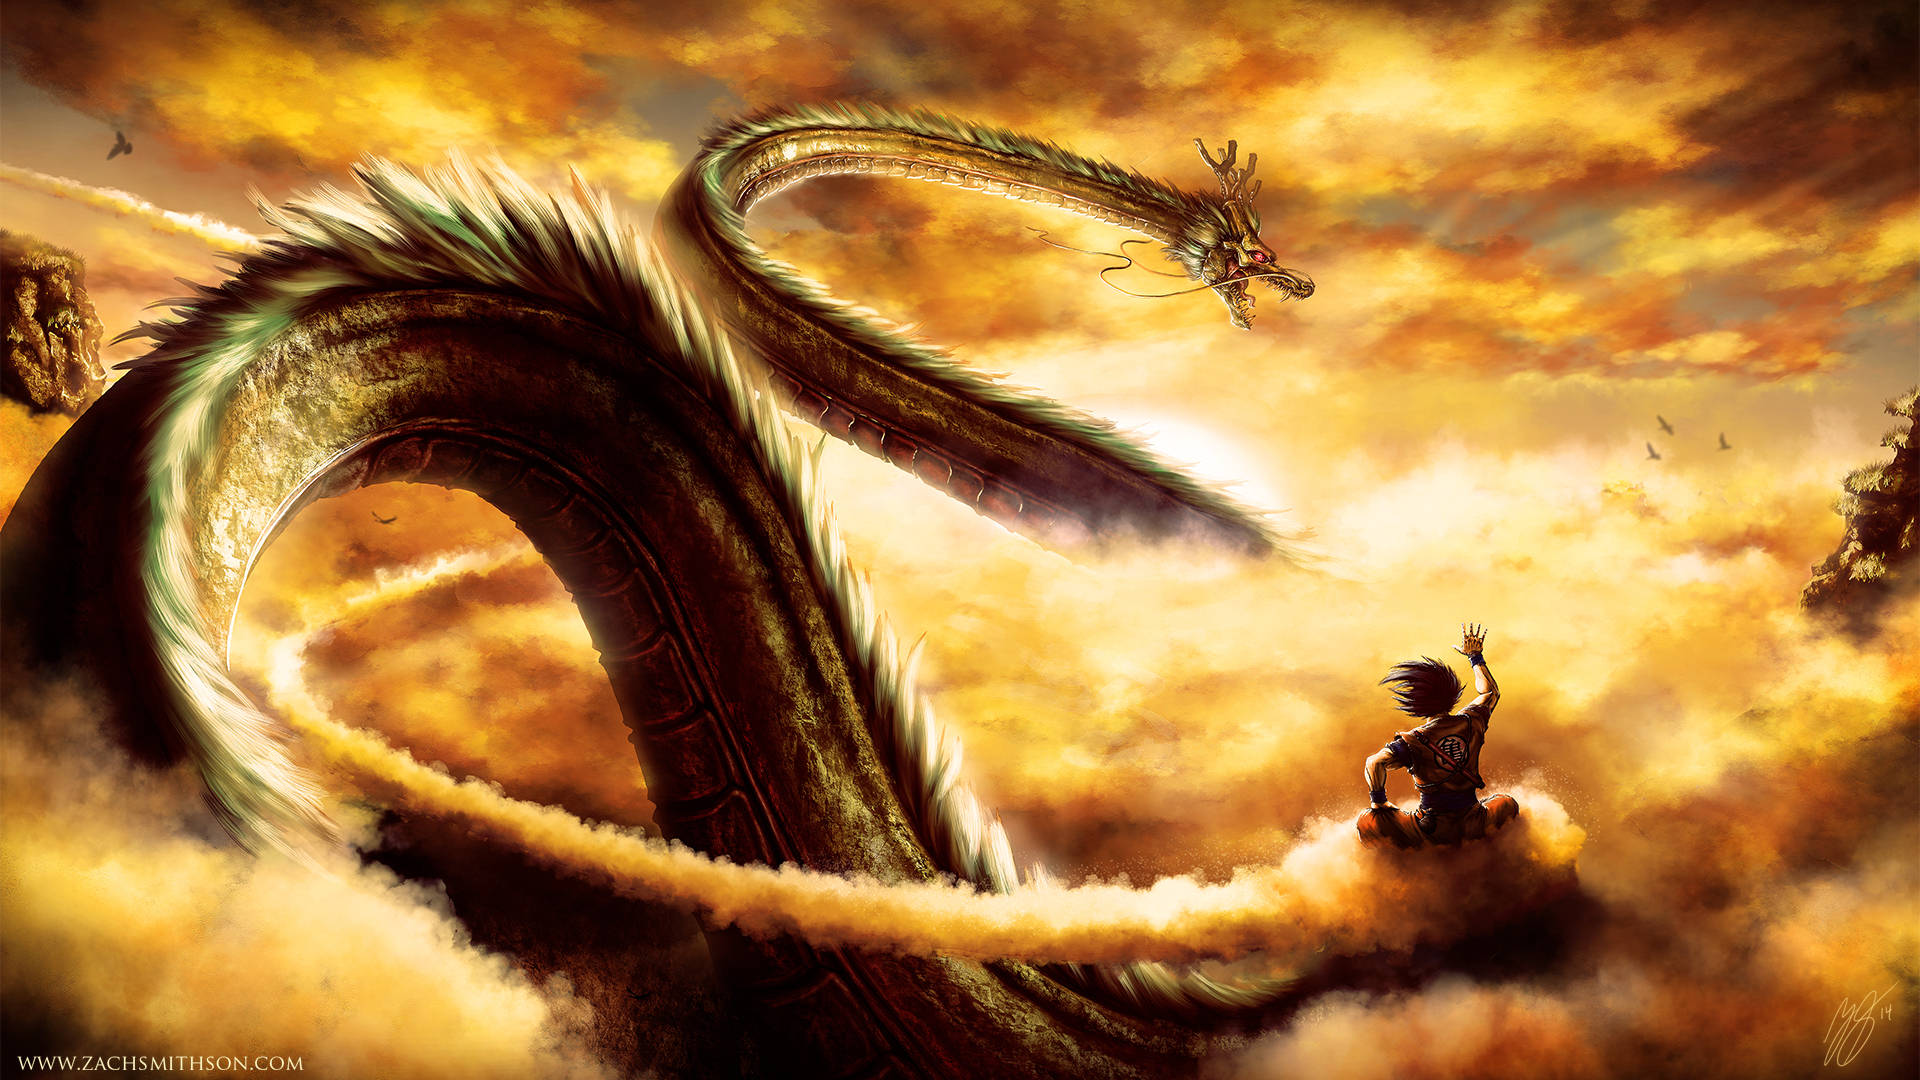 1920 X 1080 Anime Dragon Shenron Wallpaper